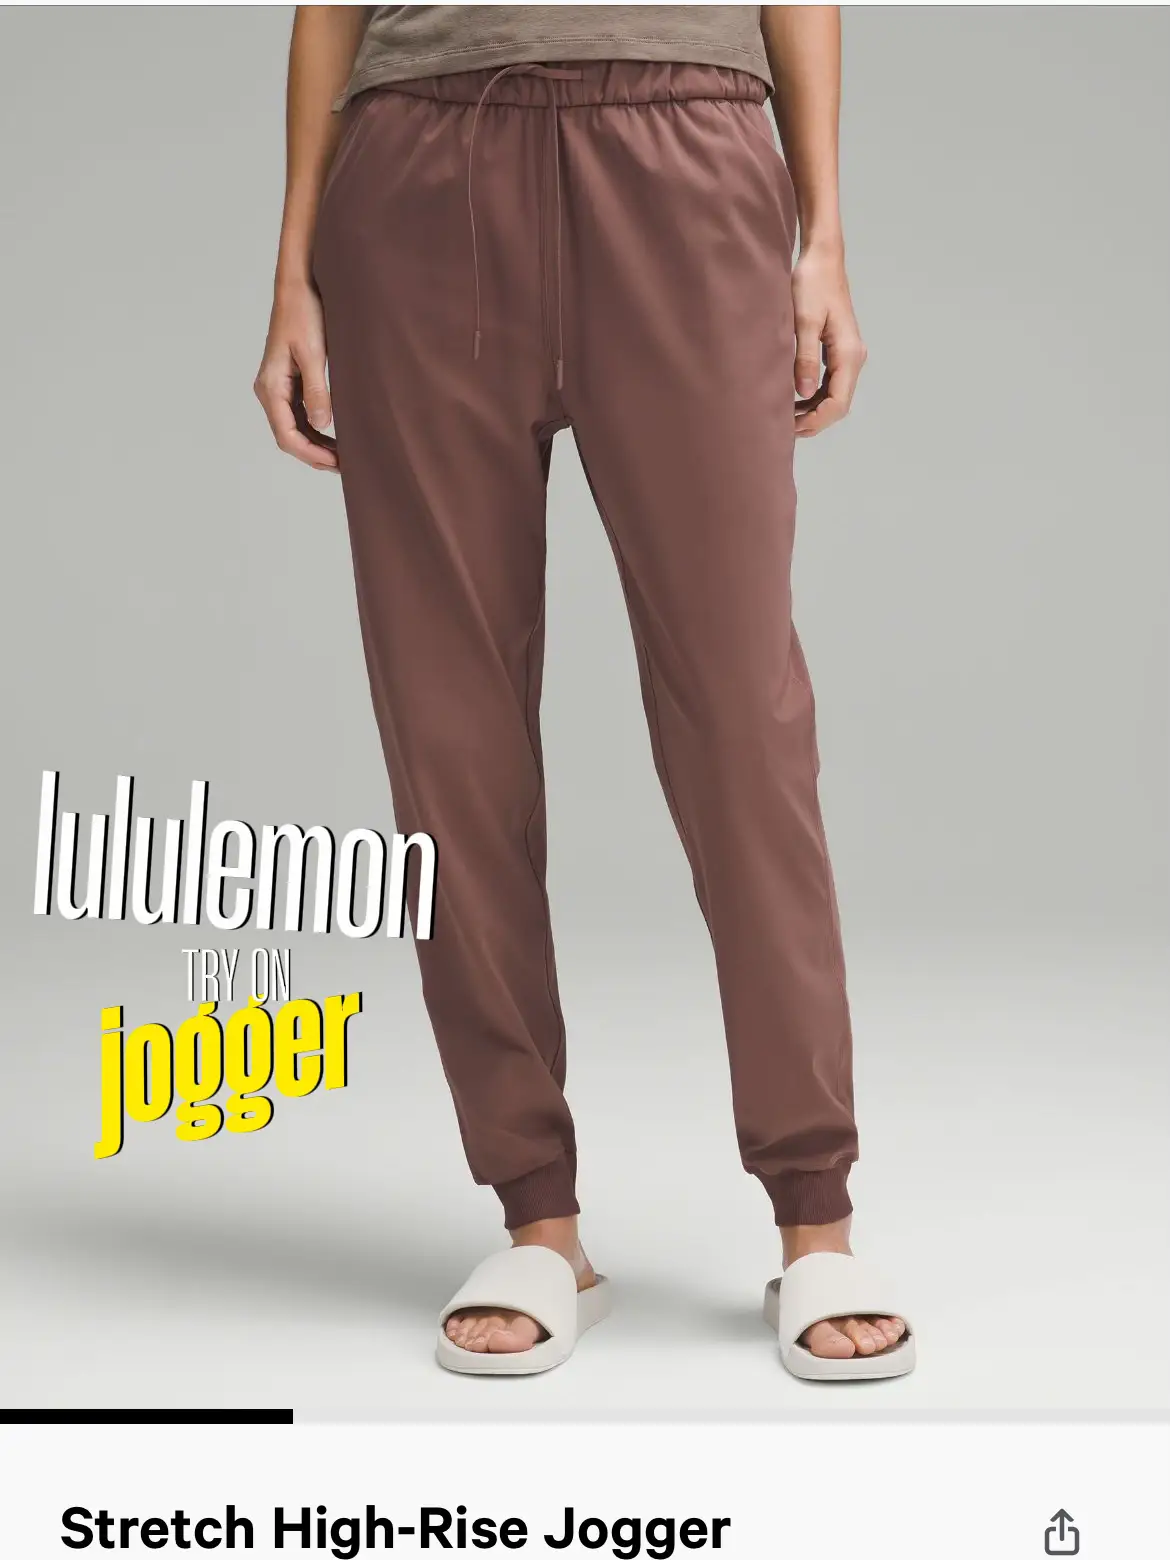 Lululemon Leggings size 12 - $54 - From Sandys